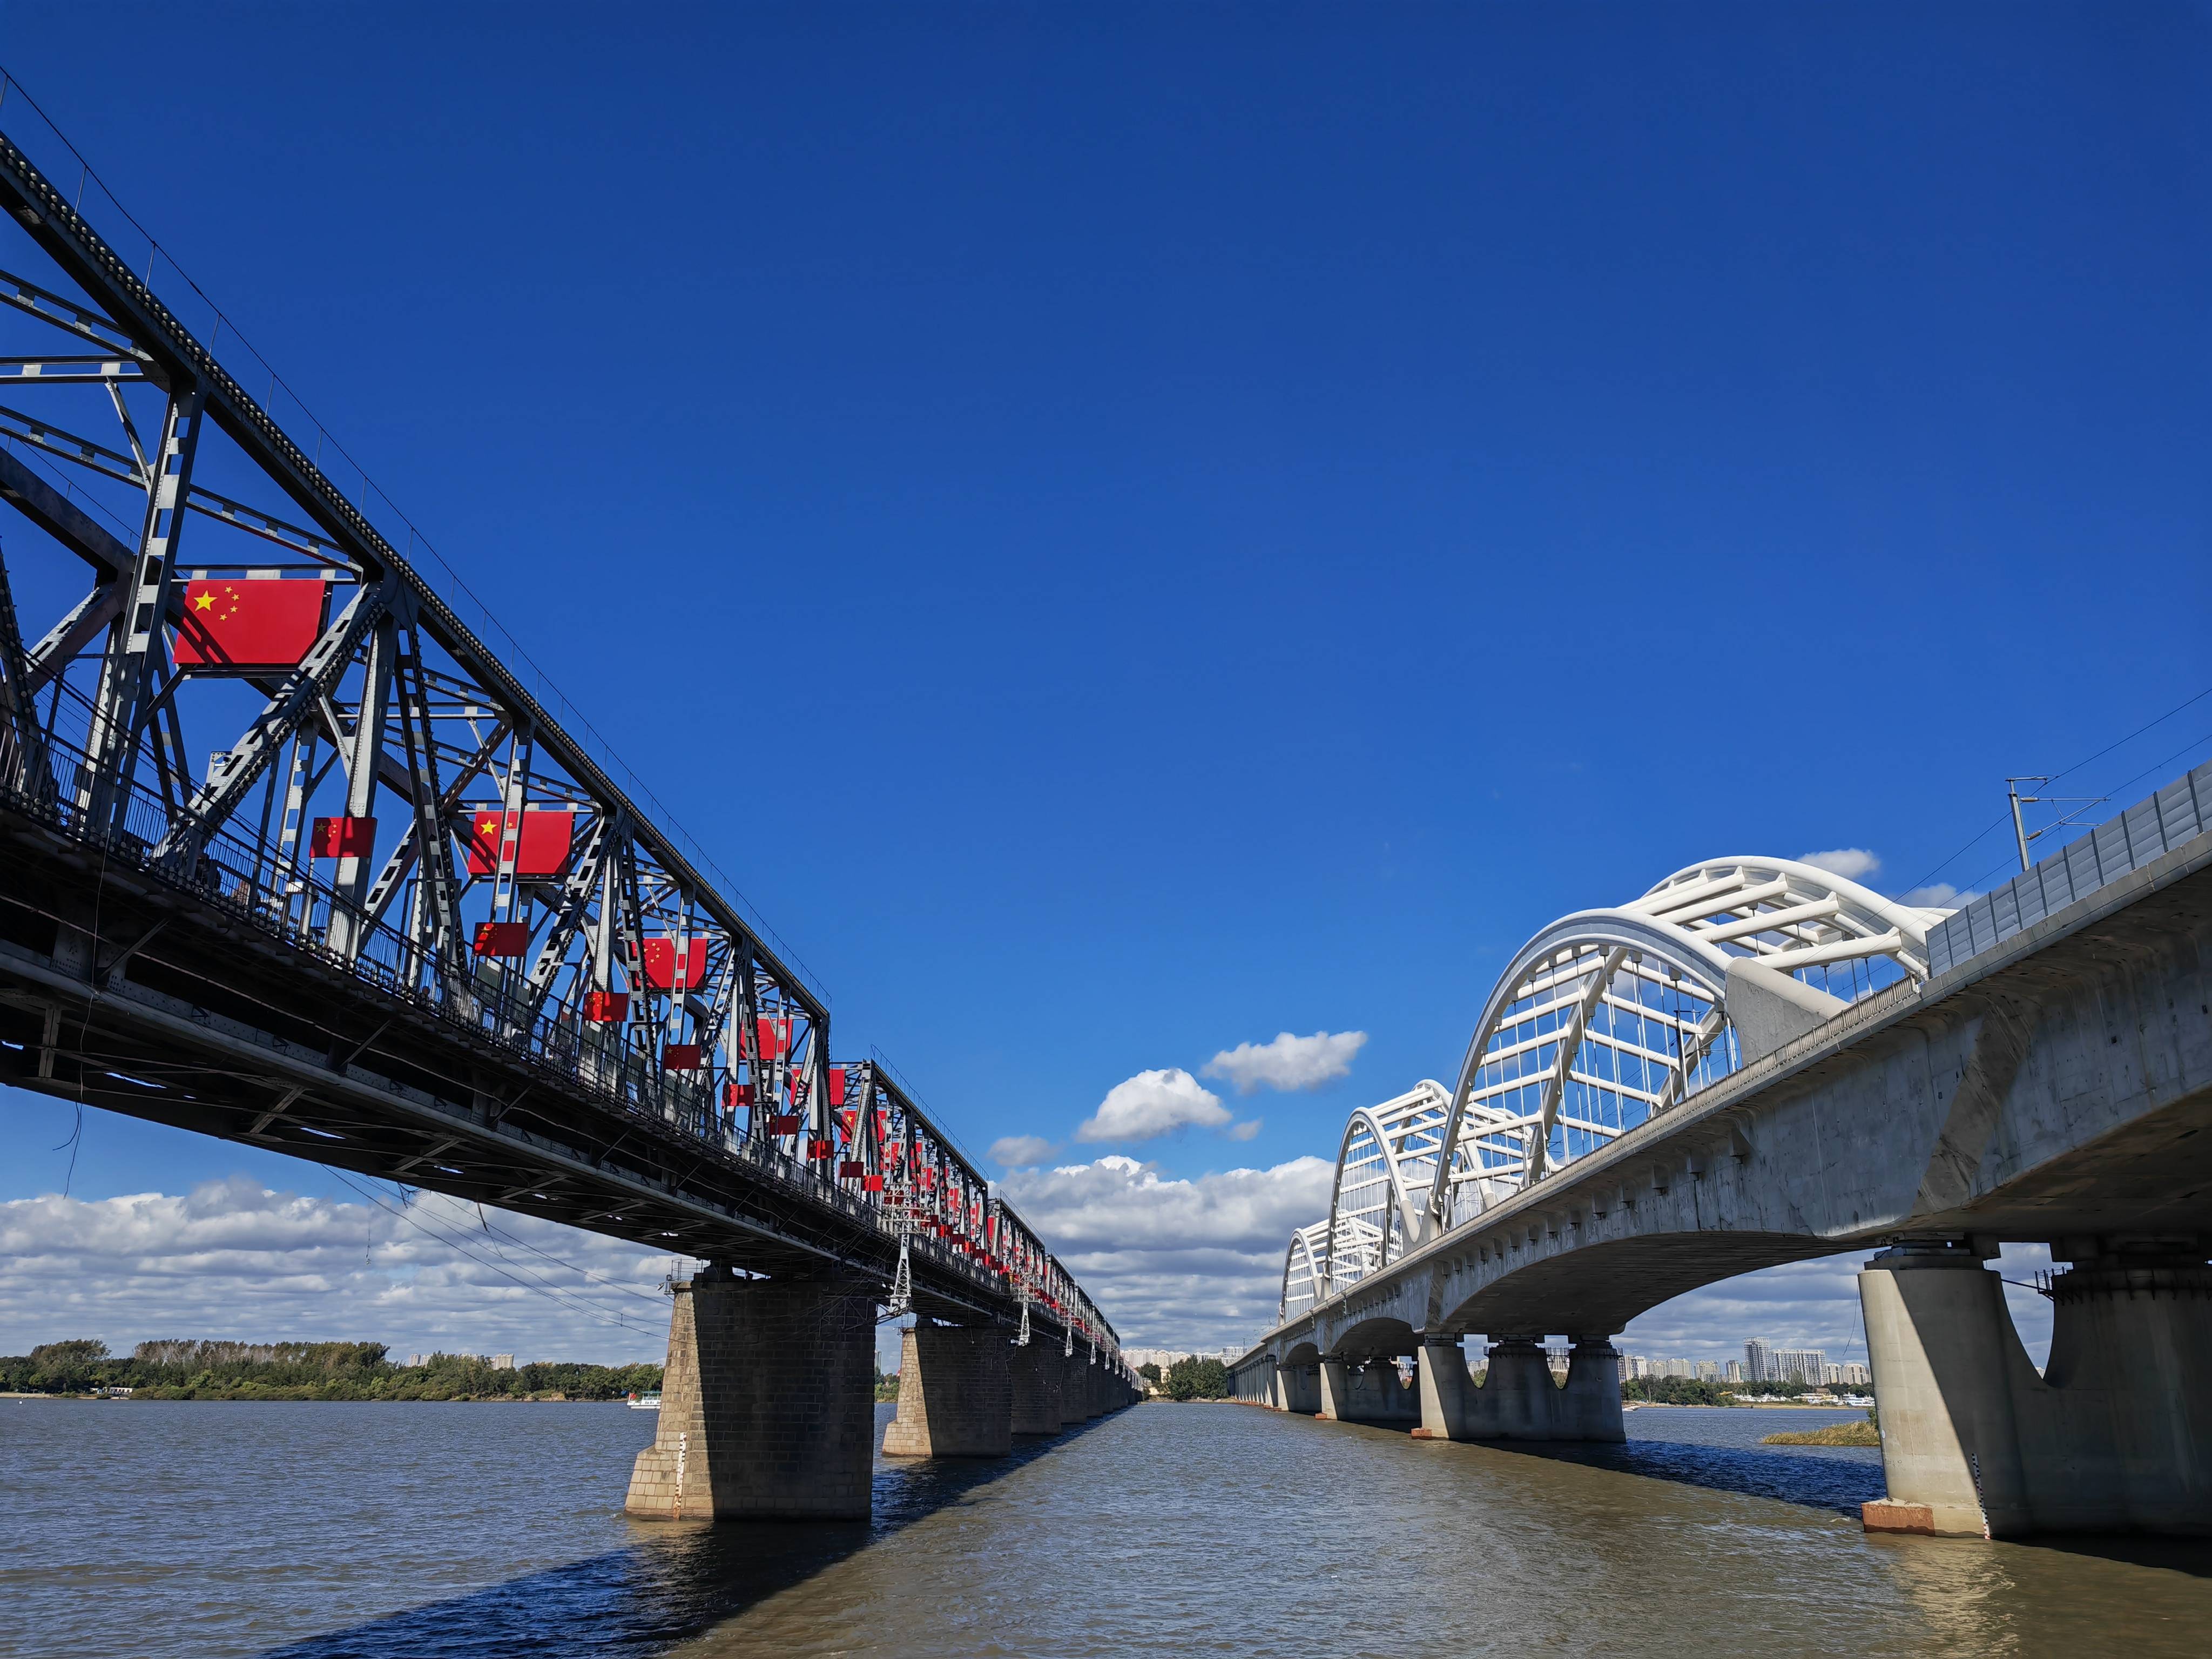 黑龙江哈尔滨:800面国旗扮靓百年铁路桥